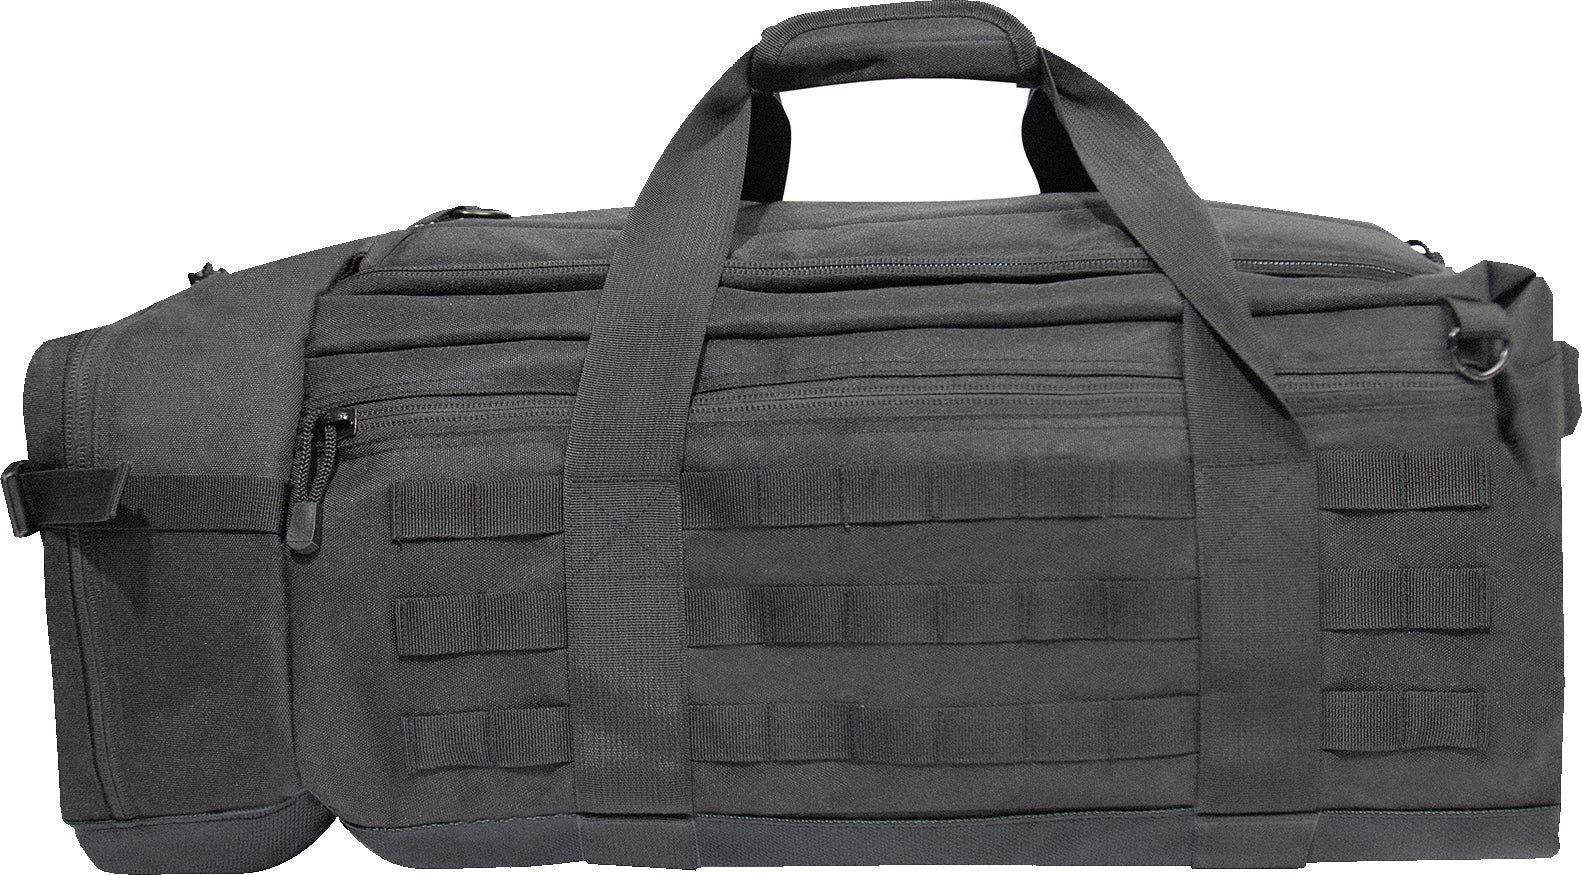 Black Tactical Defender Duffle Bag Deluxe Top Loader Gym Travel Bag